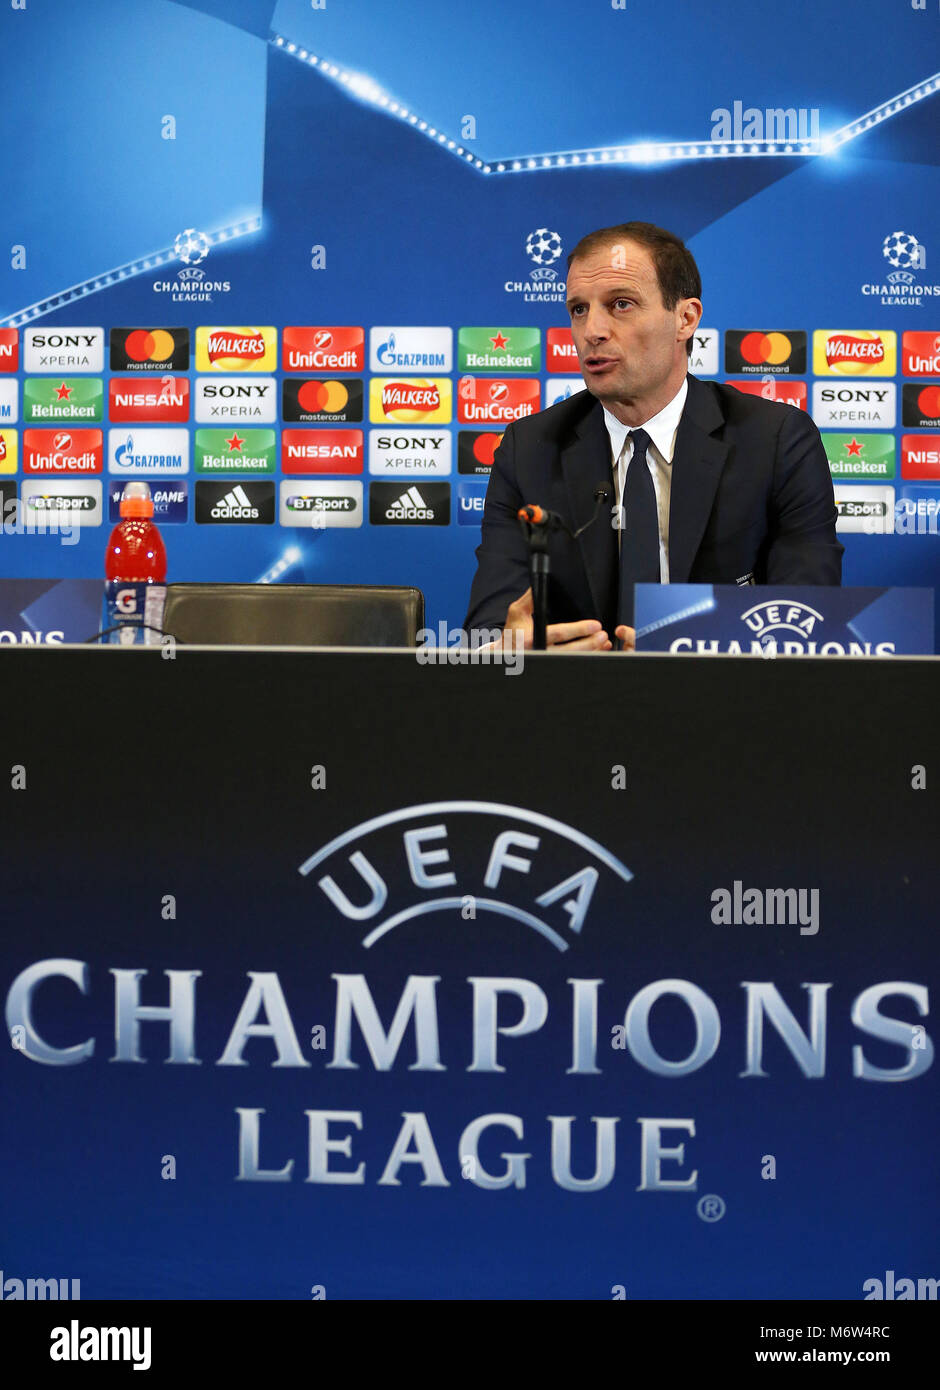 Allenatore della Juventus Massimiliano Allegri durante la conferenza stampa  presso lo Stadio di Wembley a Londra Foto stock - Alamy